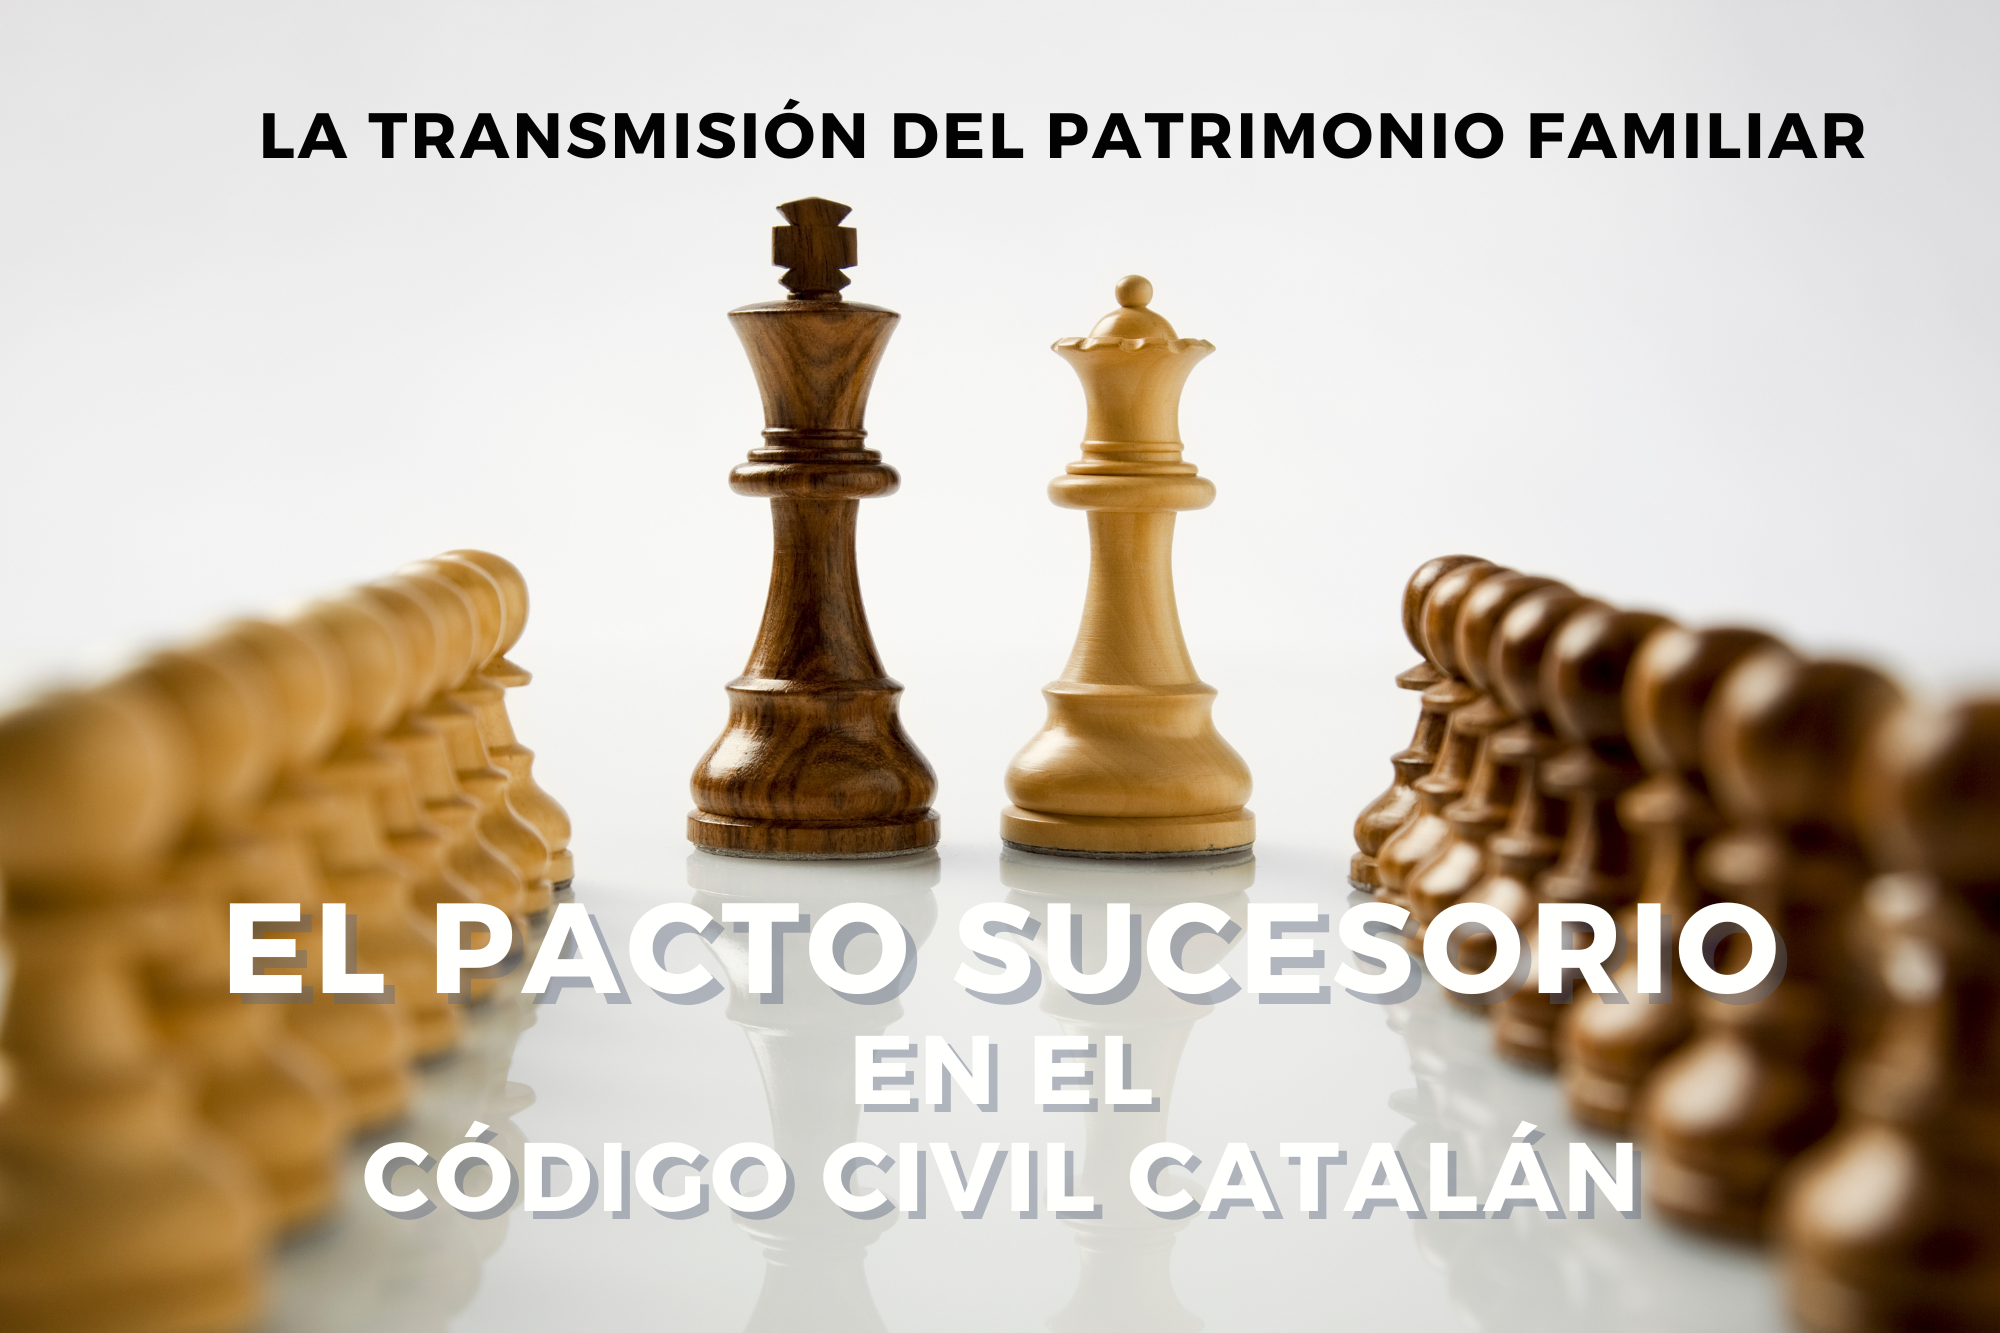 La Transmisión Del Patrimonio Familiar: El Pacto Sucesorio En El Código Civil Catalán.